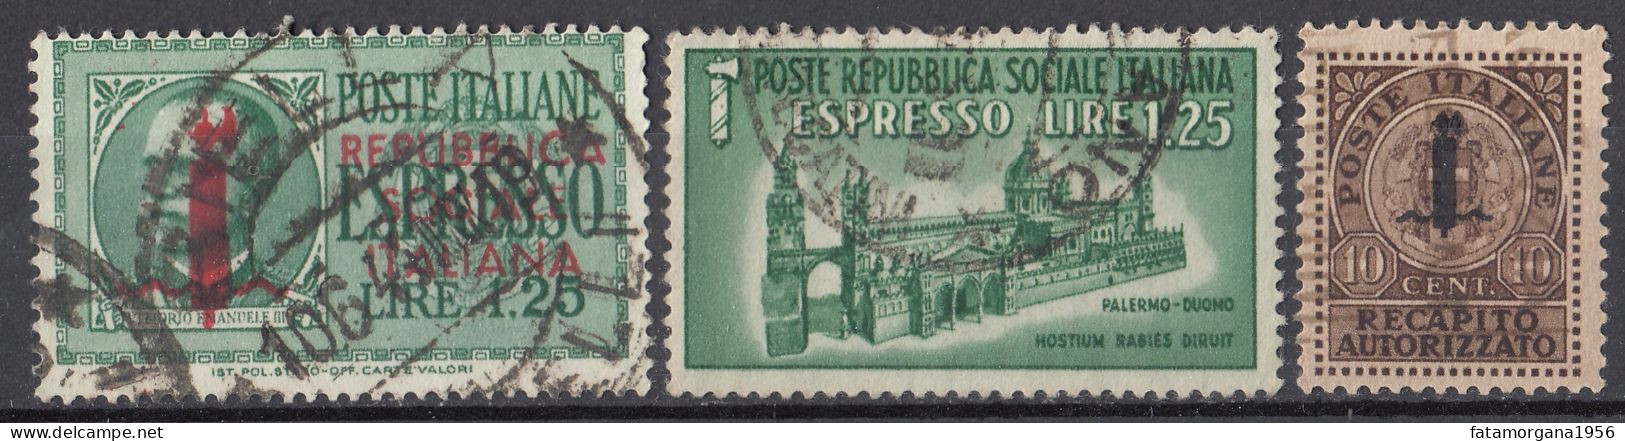 ITALIA, REPUBBLICA SOCIALE - 1944 - Lotto Di 3 Di Francobolli Per Espresso/recapito Autorizzato Usati: Yvert 3, 5 E 6. - Exprespost